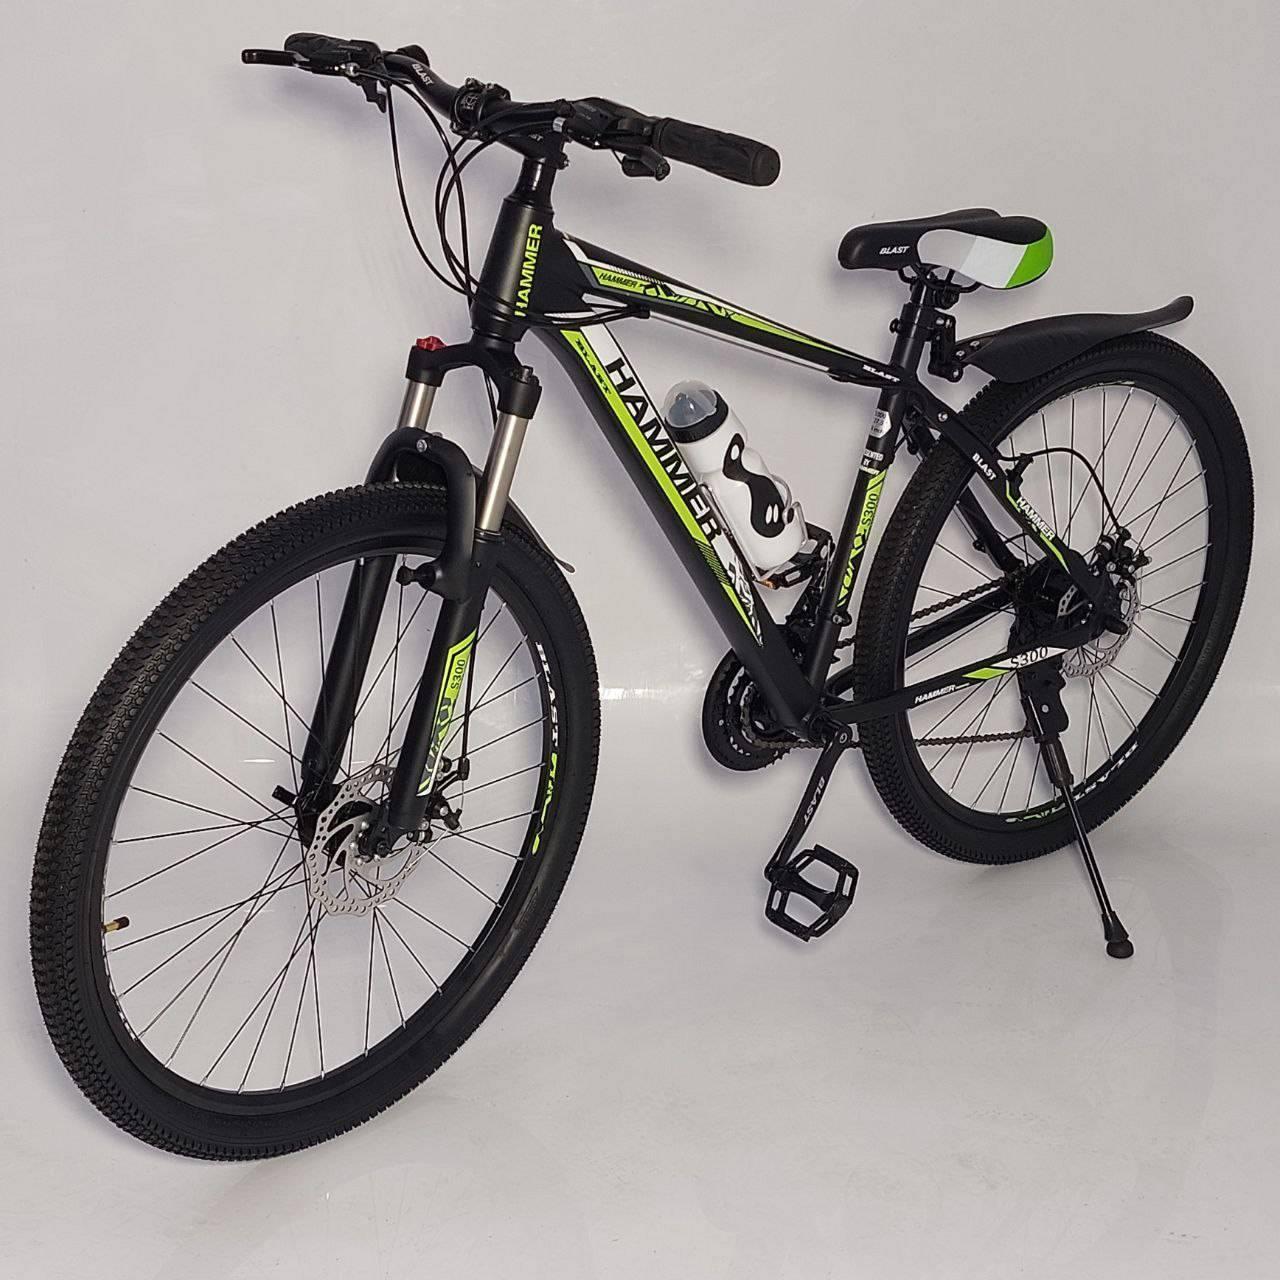 Швидкісний велосипед для дорослих і підлітків Hammer Blast S-300 29 дюймів з рамою 18 дюймів